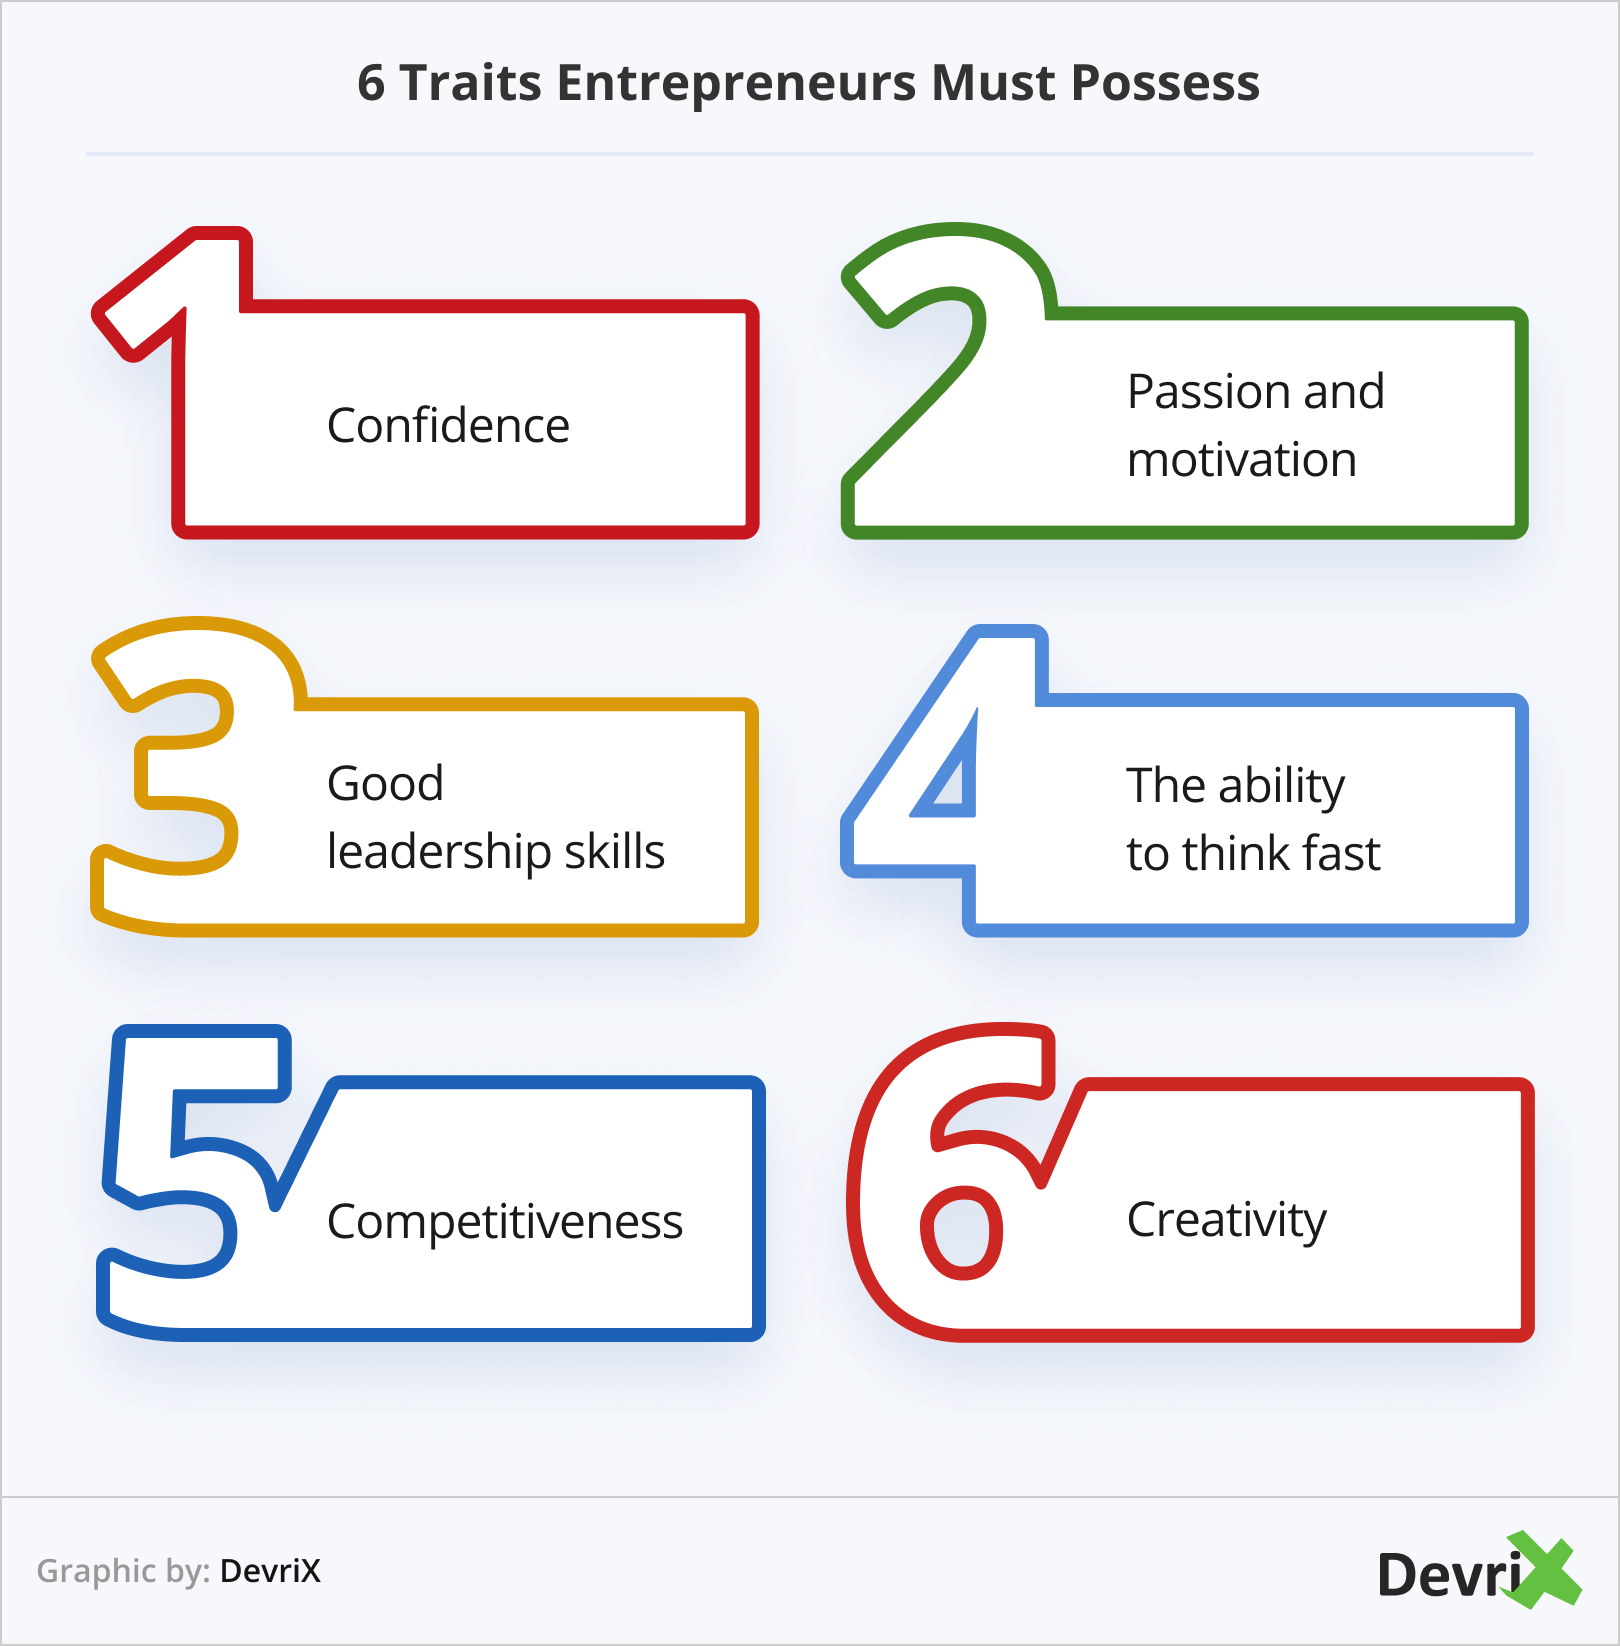 6 Traits Entrepreneurs Must Possess